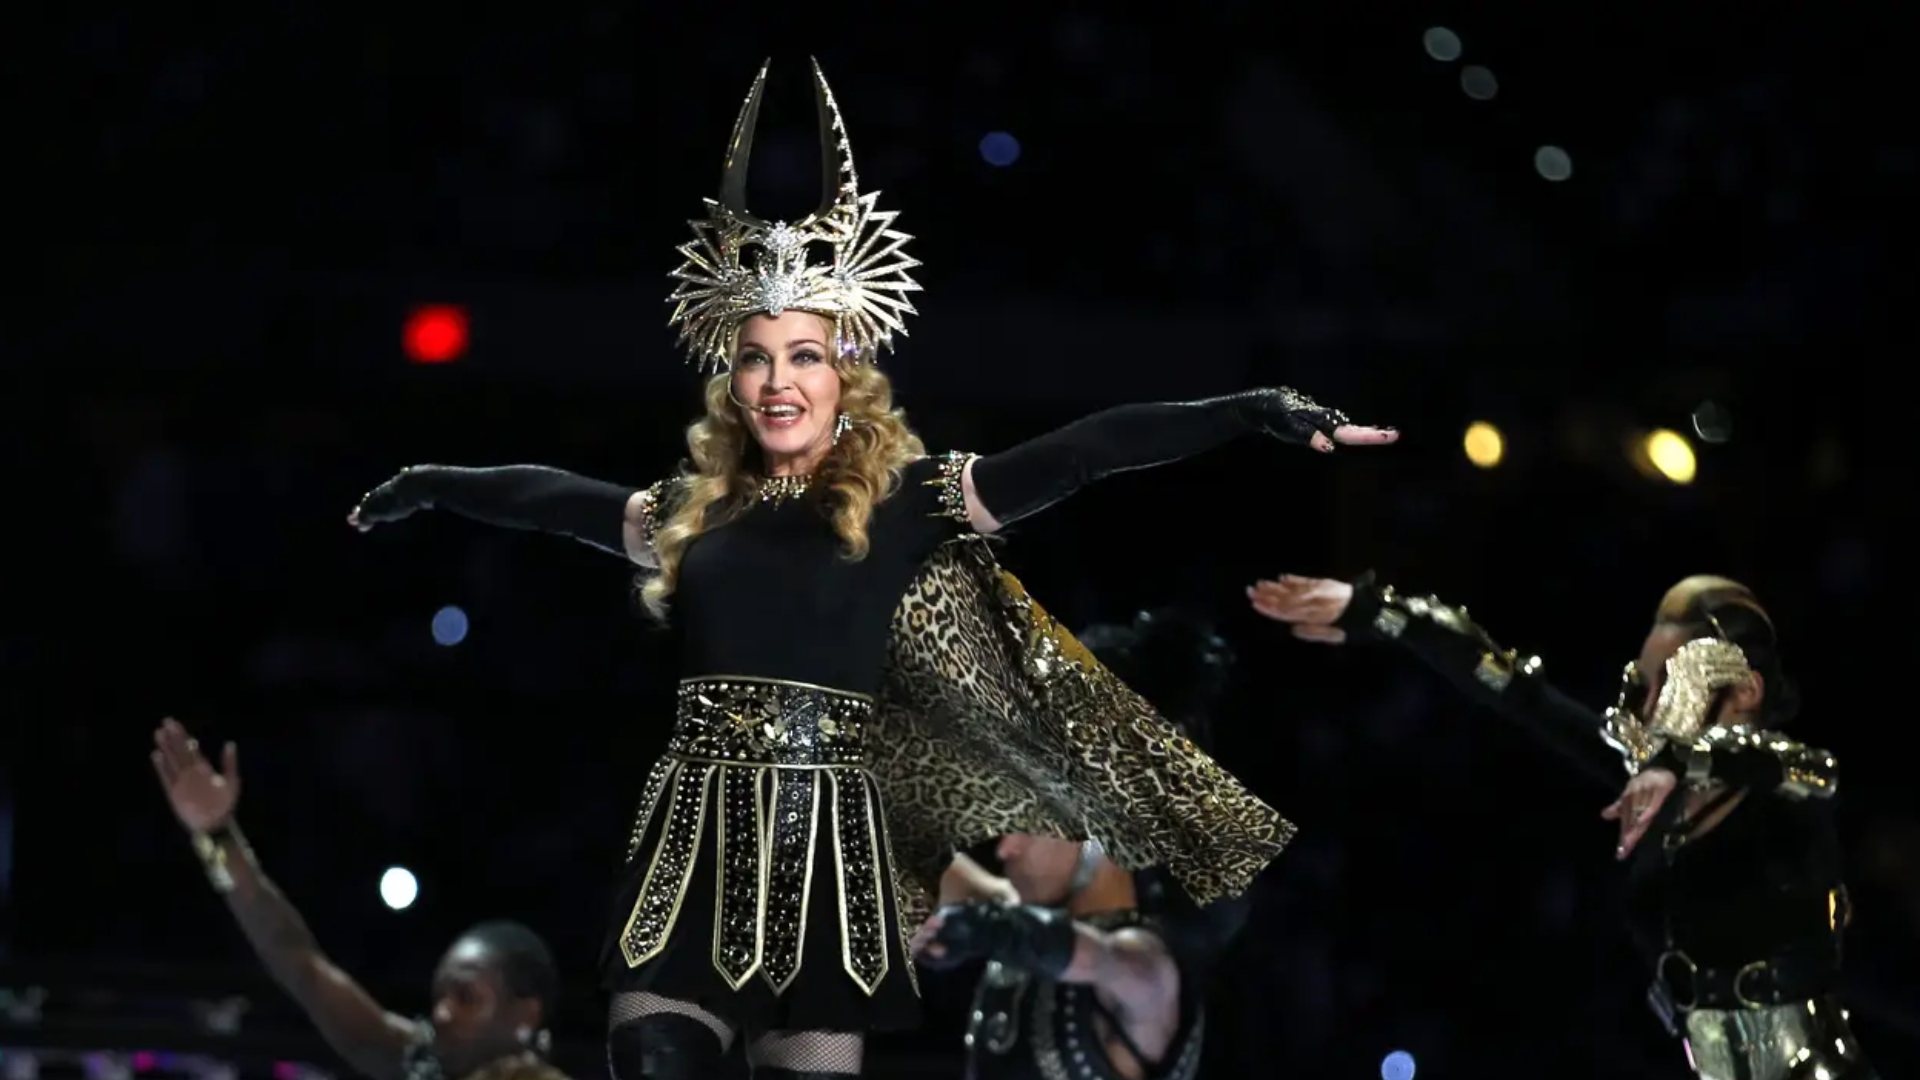 Las leyendas de rock funcionaron por un tiempo, pero el patrocinador, Bridgestone, optó por un cambio: Regresar a las estrellas pop. Tras la crítica a The Black Eyed Peas, Madonna reivindicó el show: Logró equilibrar calidad musical con espectáculo.